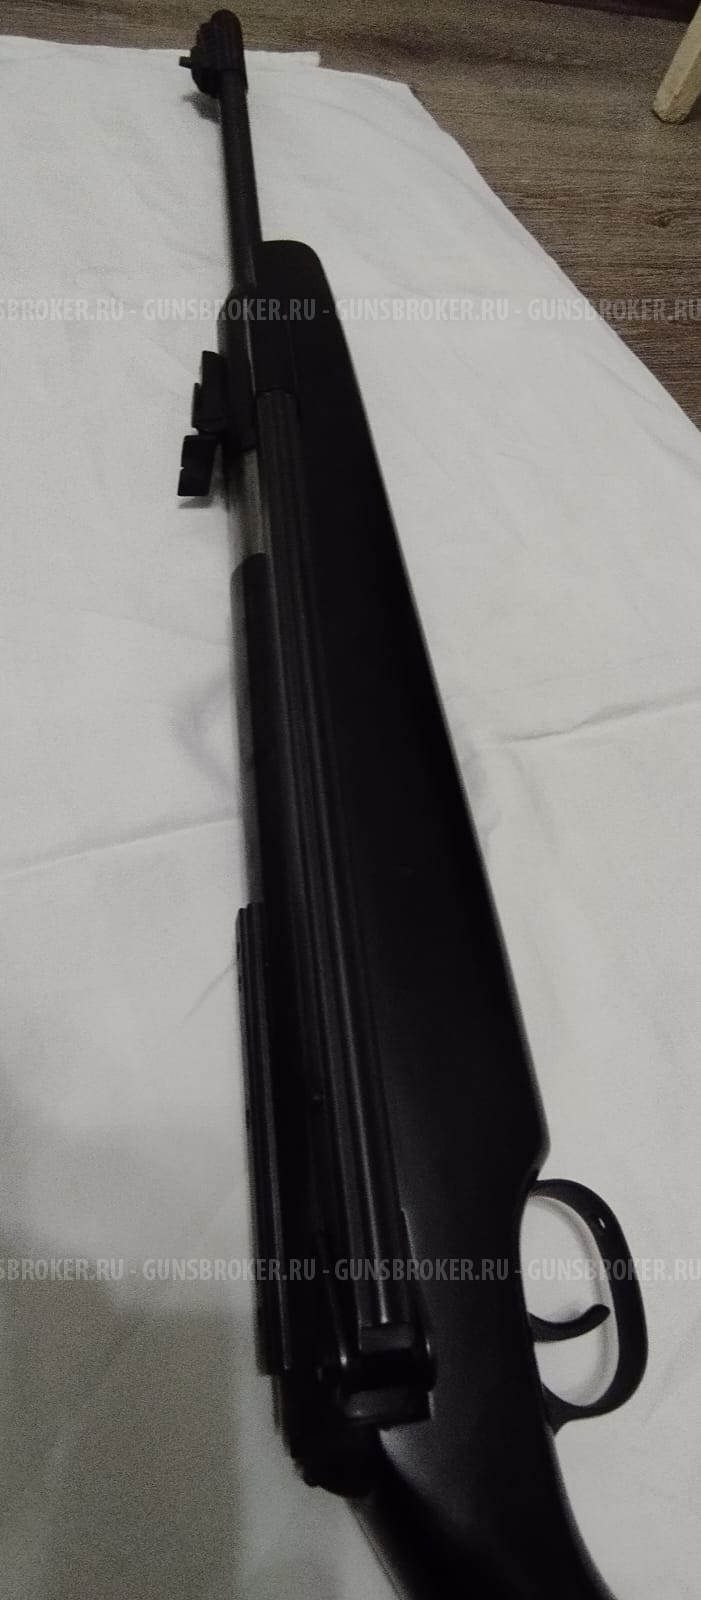 Пневматическая винтовка DIANA Mod. 48 T01